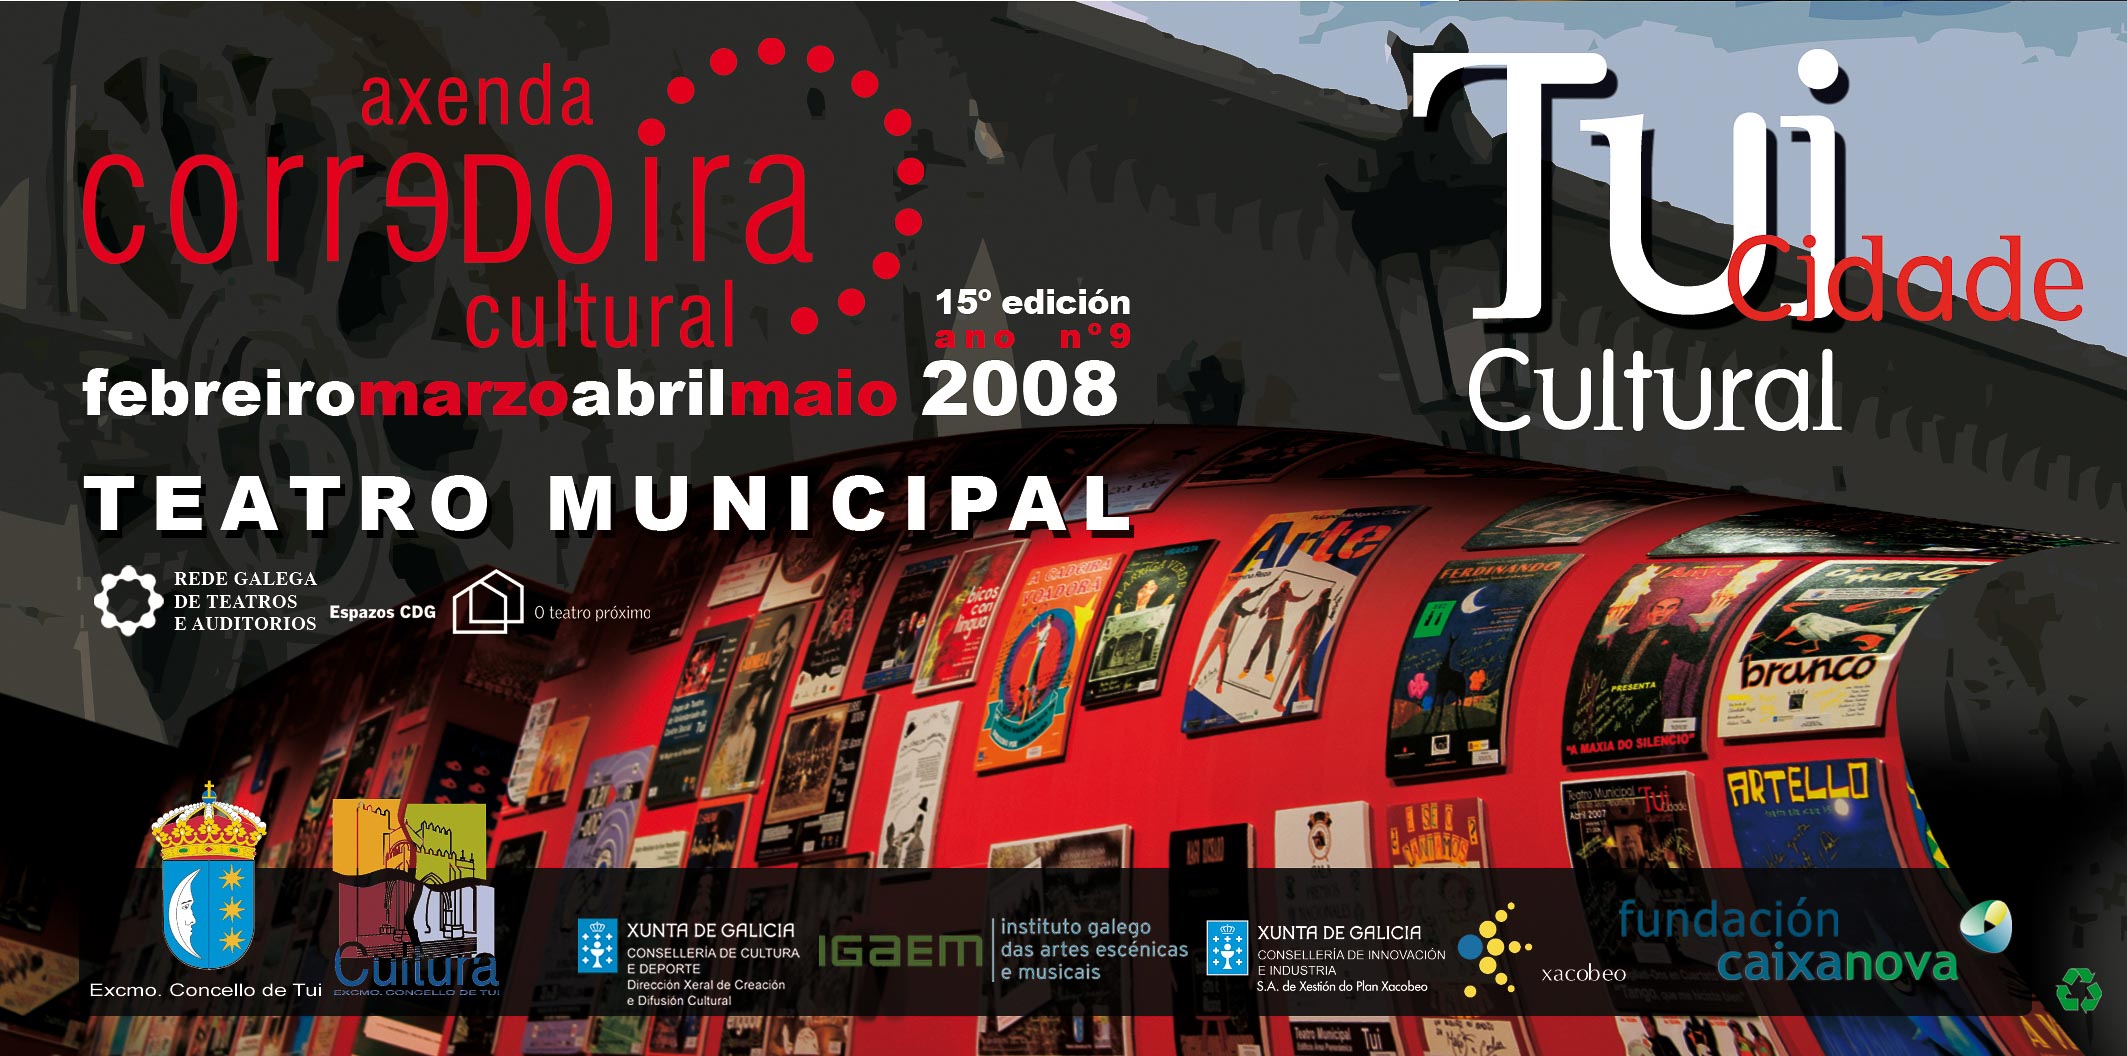 concello-de-tui-2008 1Âº portada teatro